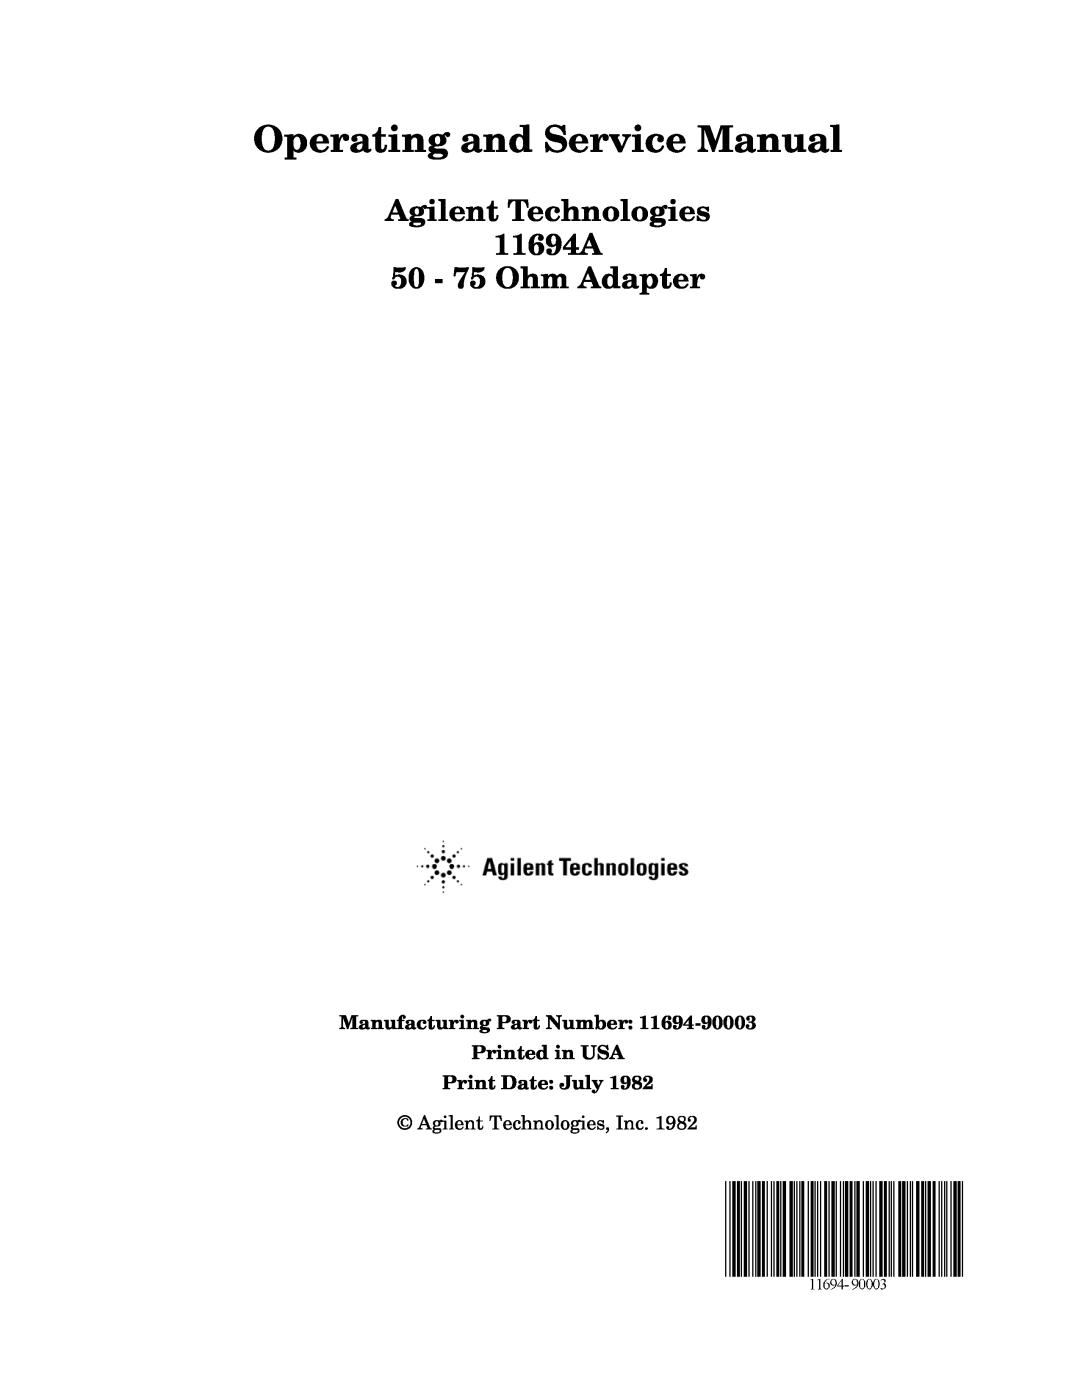 Agilent Technologies service manual Agilent Technologies 11694A 50 - 75 Ohm Adapter 